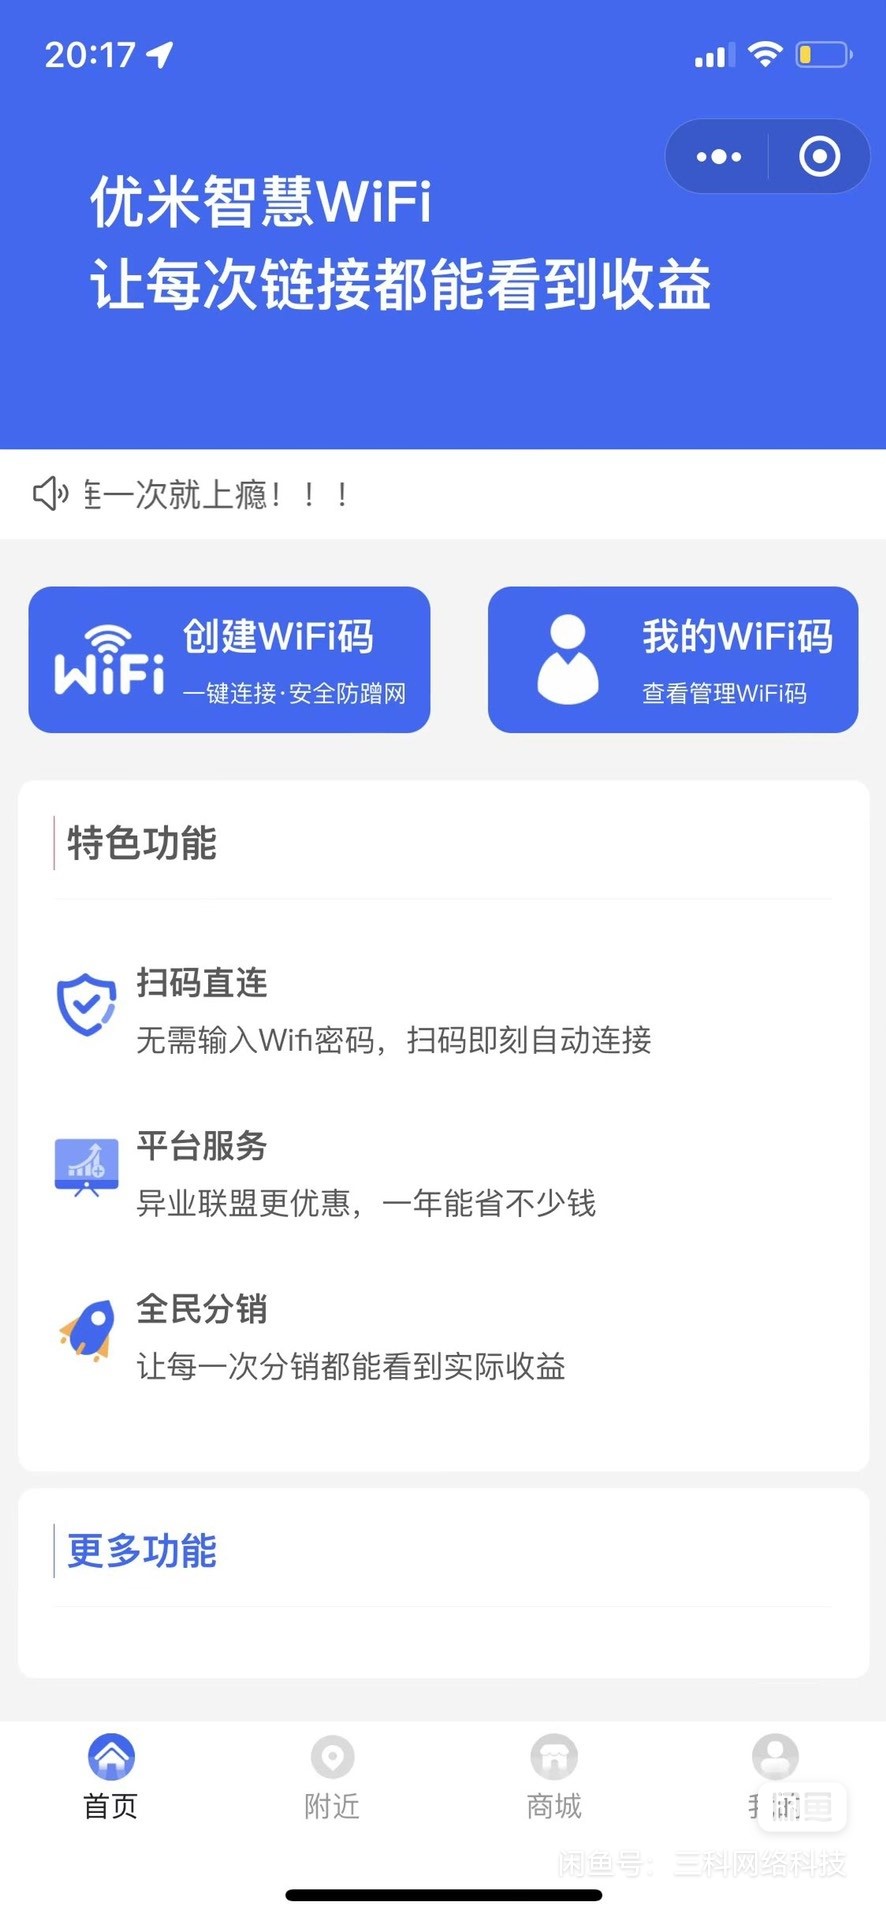 2023 最新版 WiFi 大师专业版小程序带流量主独立版 4.0.5【源码 + 搭建教程】